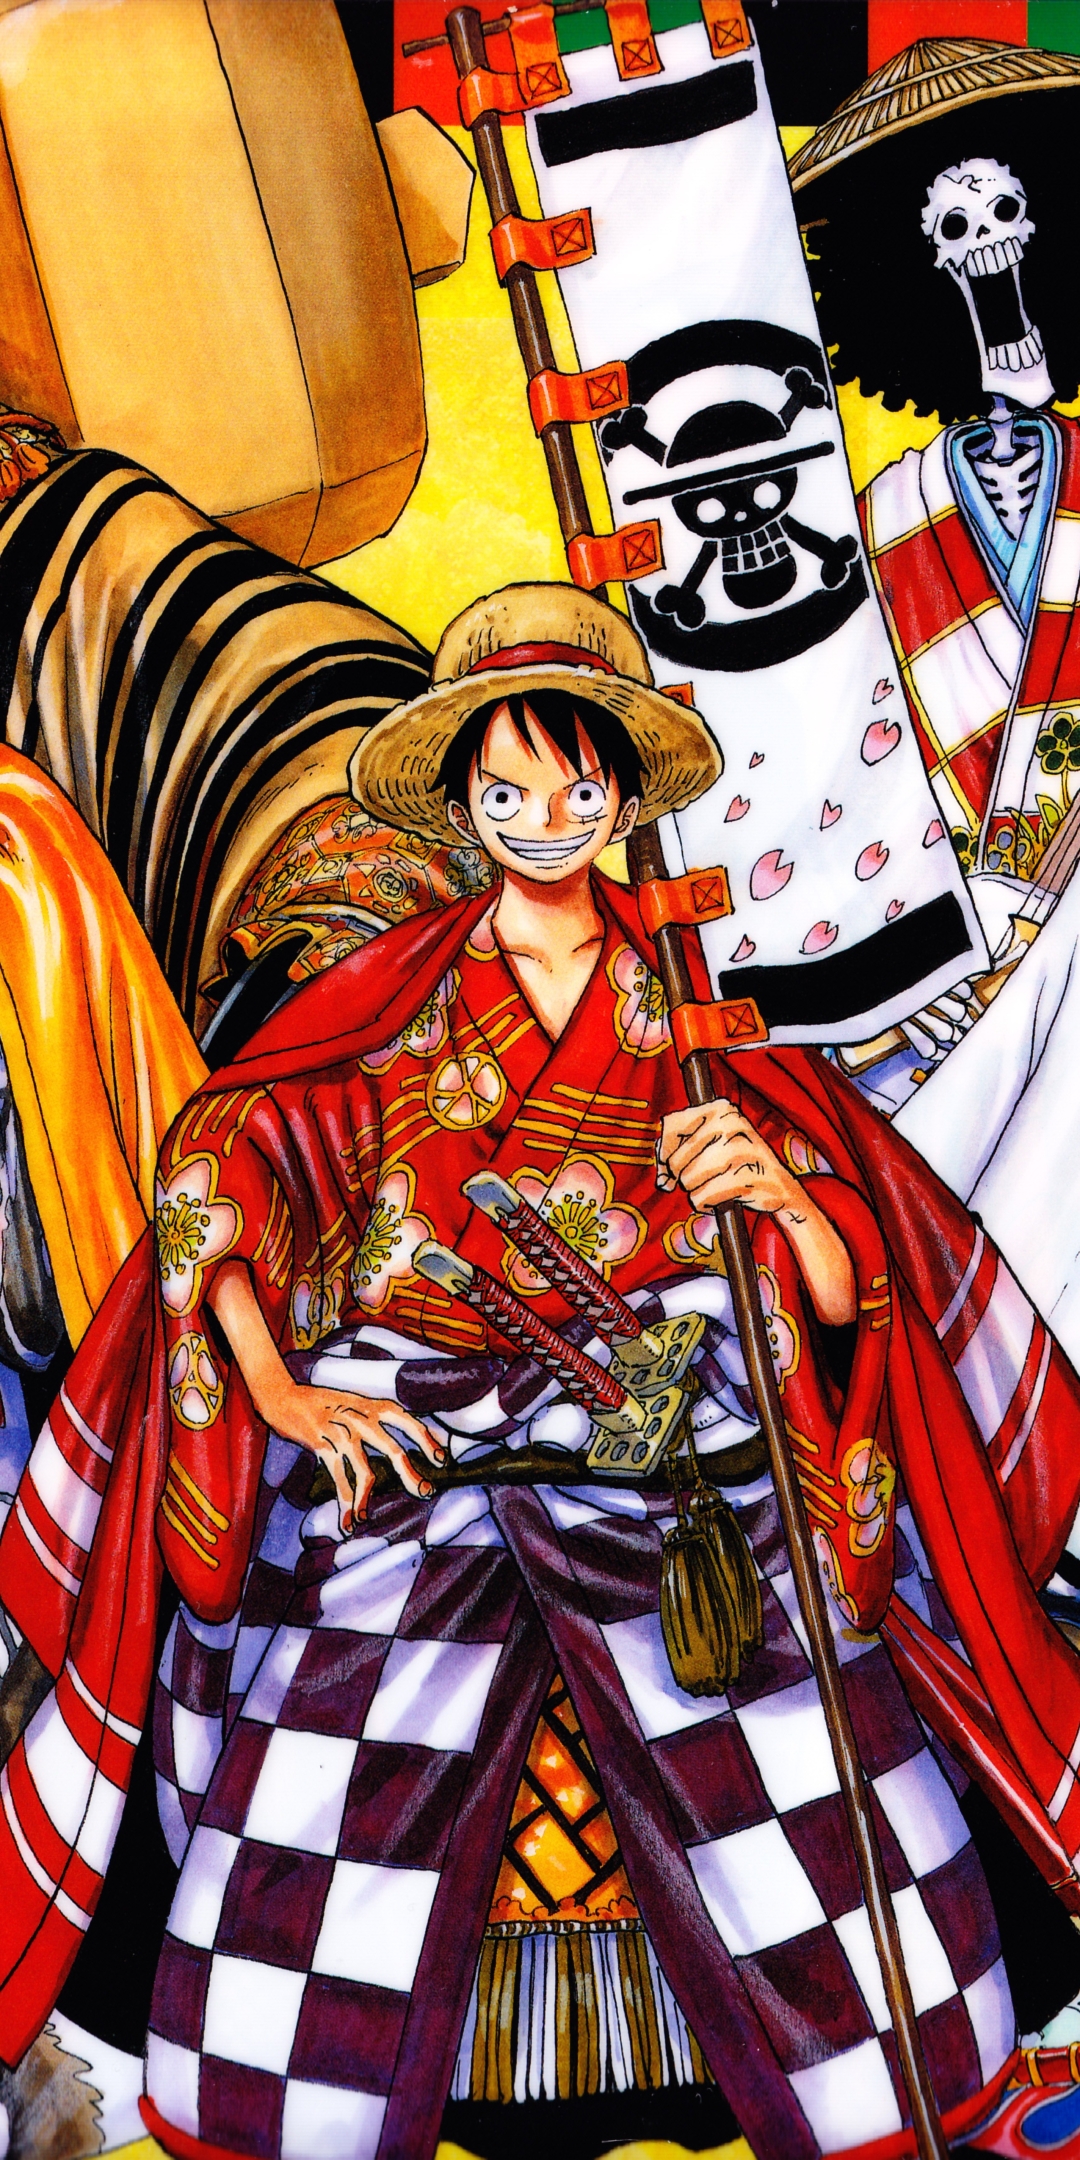 Tải hình nền Luffy One Piece trọn bộ đẹp ngầu siêu cute full HD